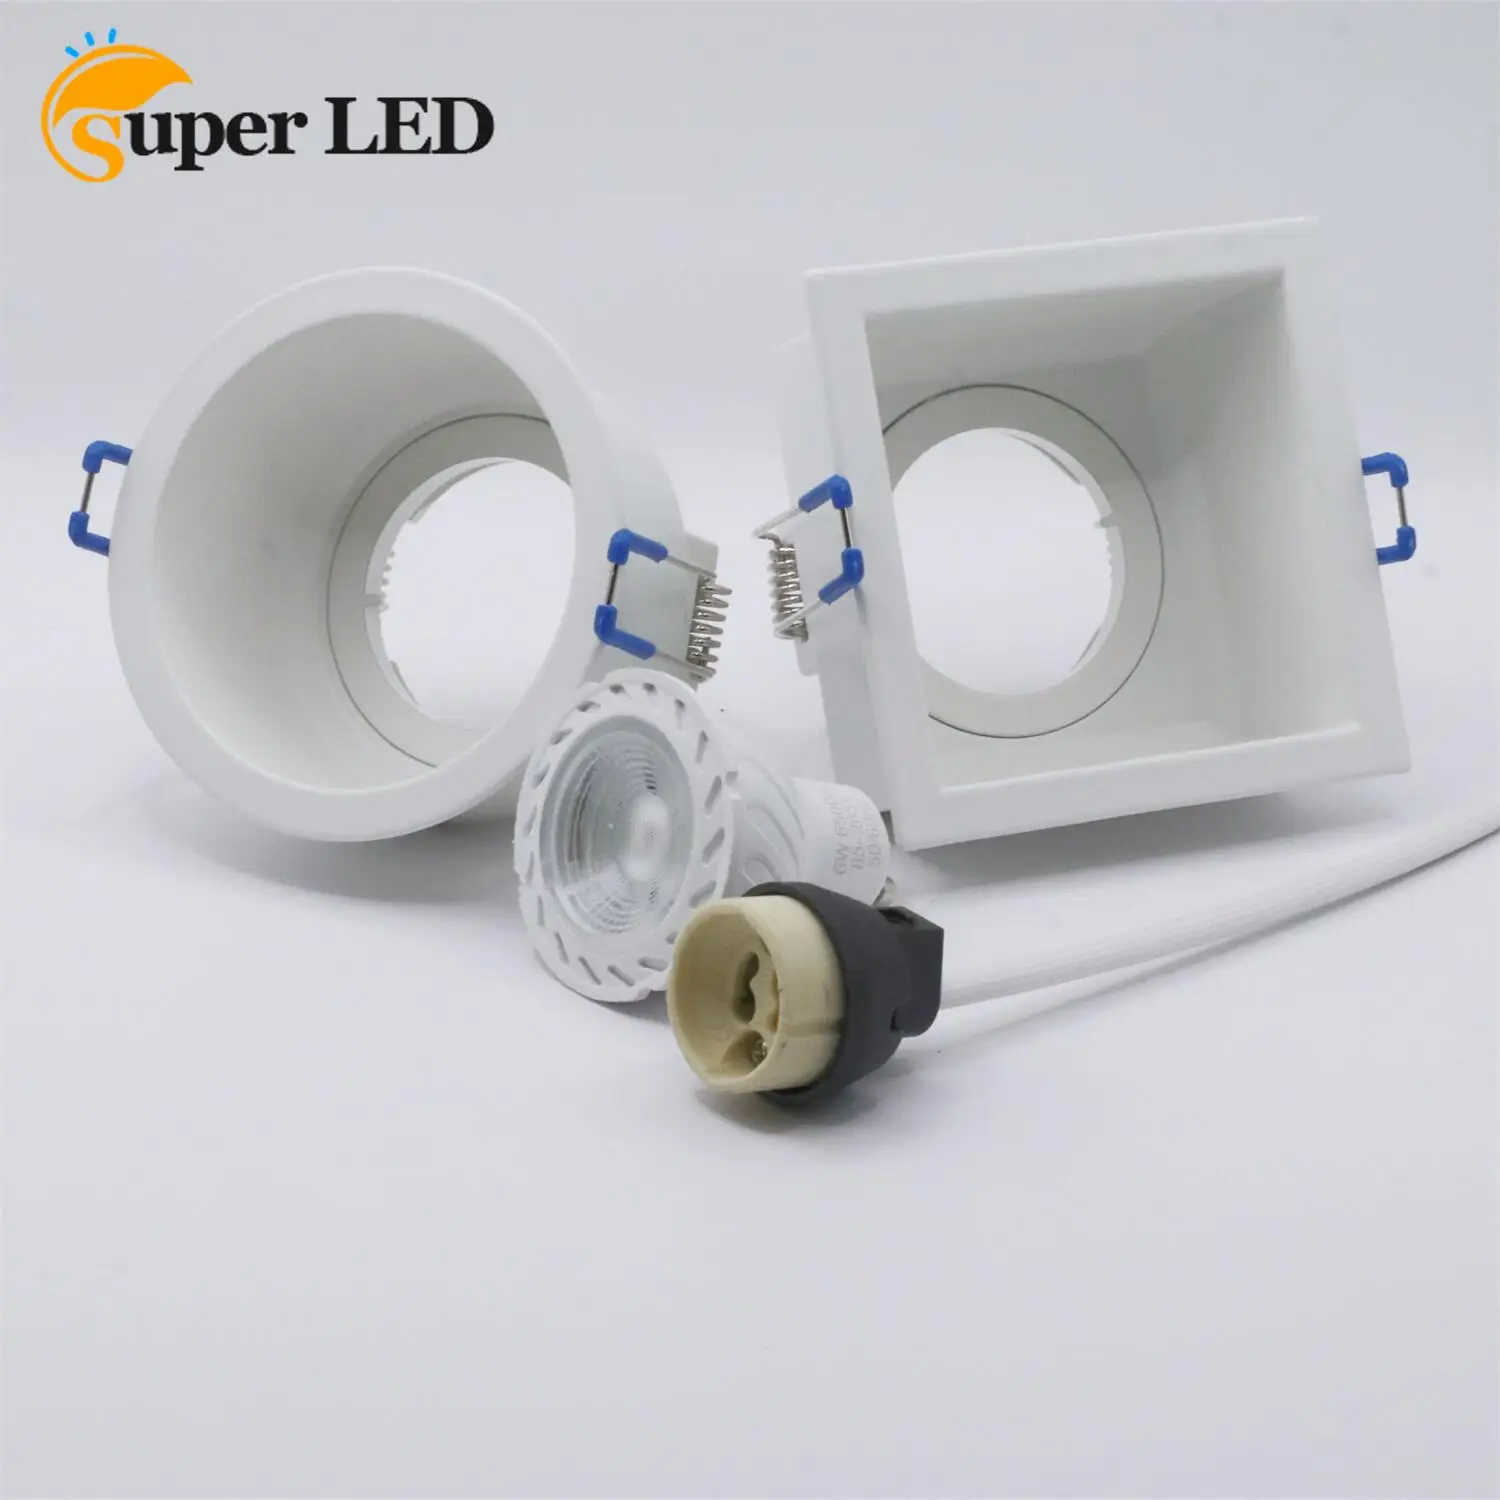 

White Shell Round/Square Downlight Housing Light Fixture GU10 MR16 Led Bulb Spot/Eyeball Casing LED Eyeball Fitting Casing